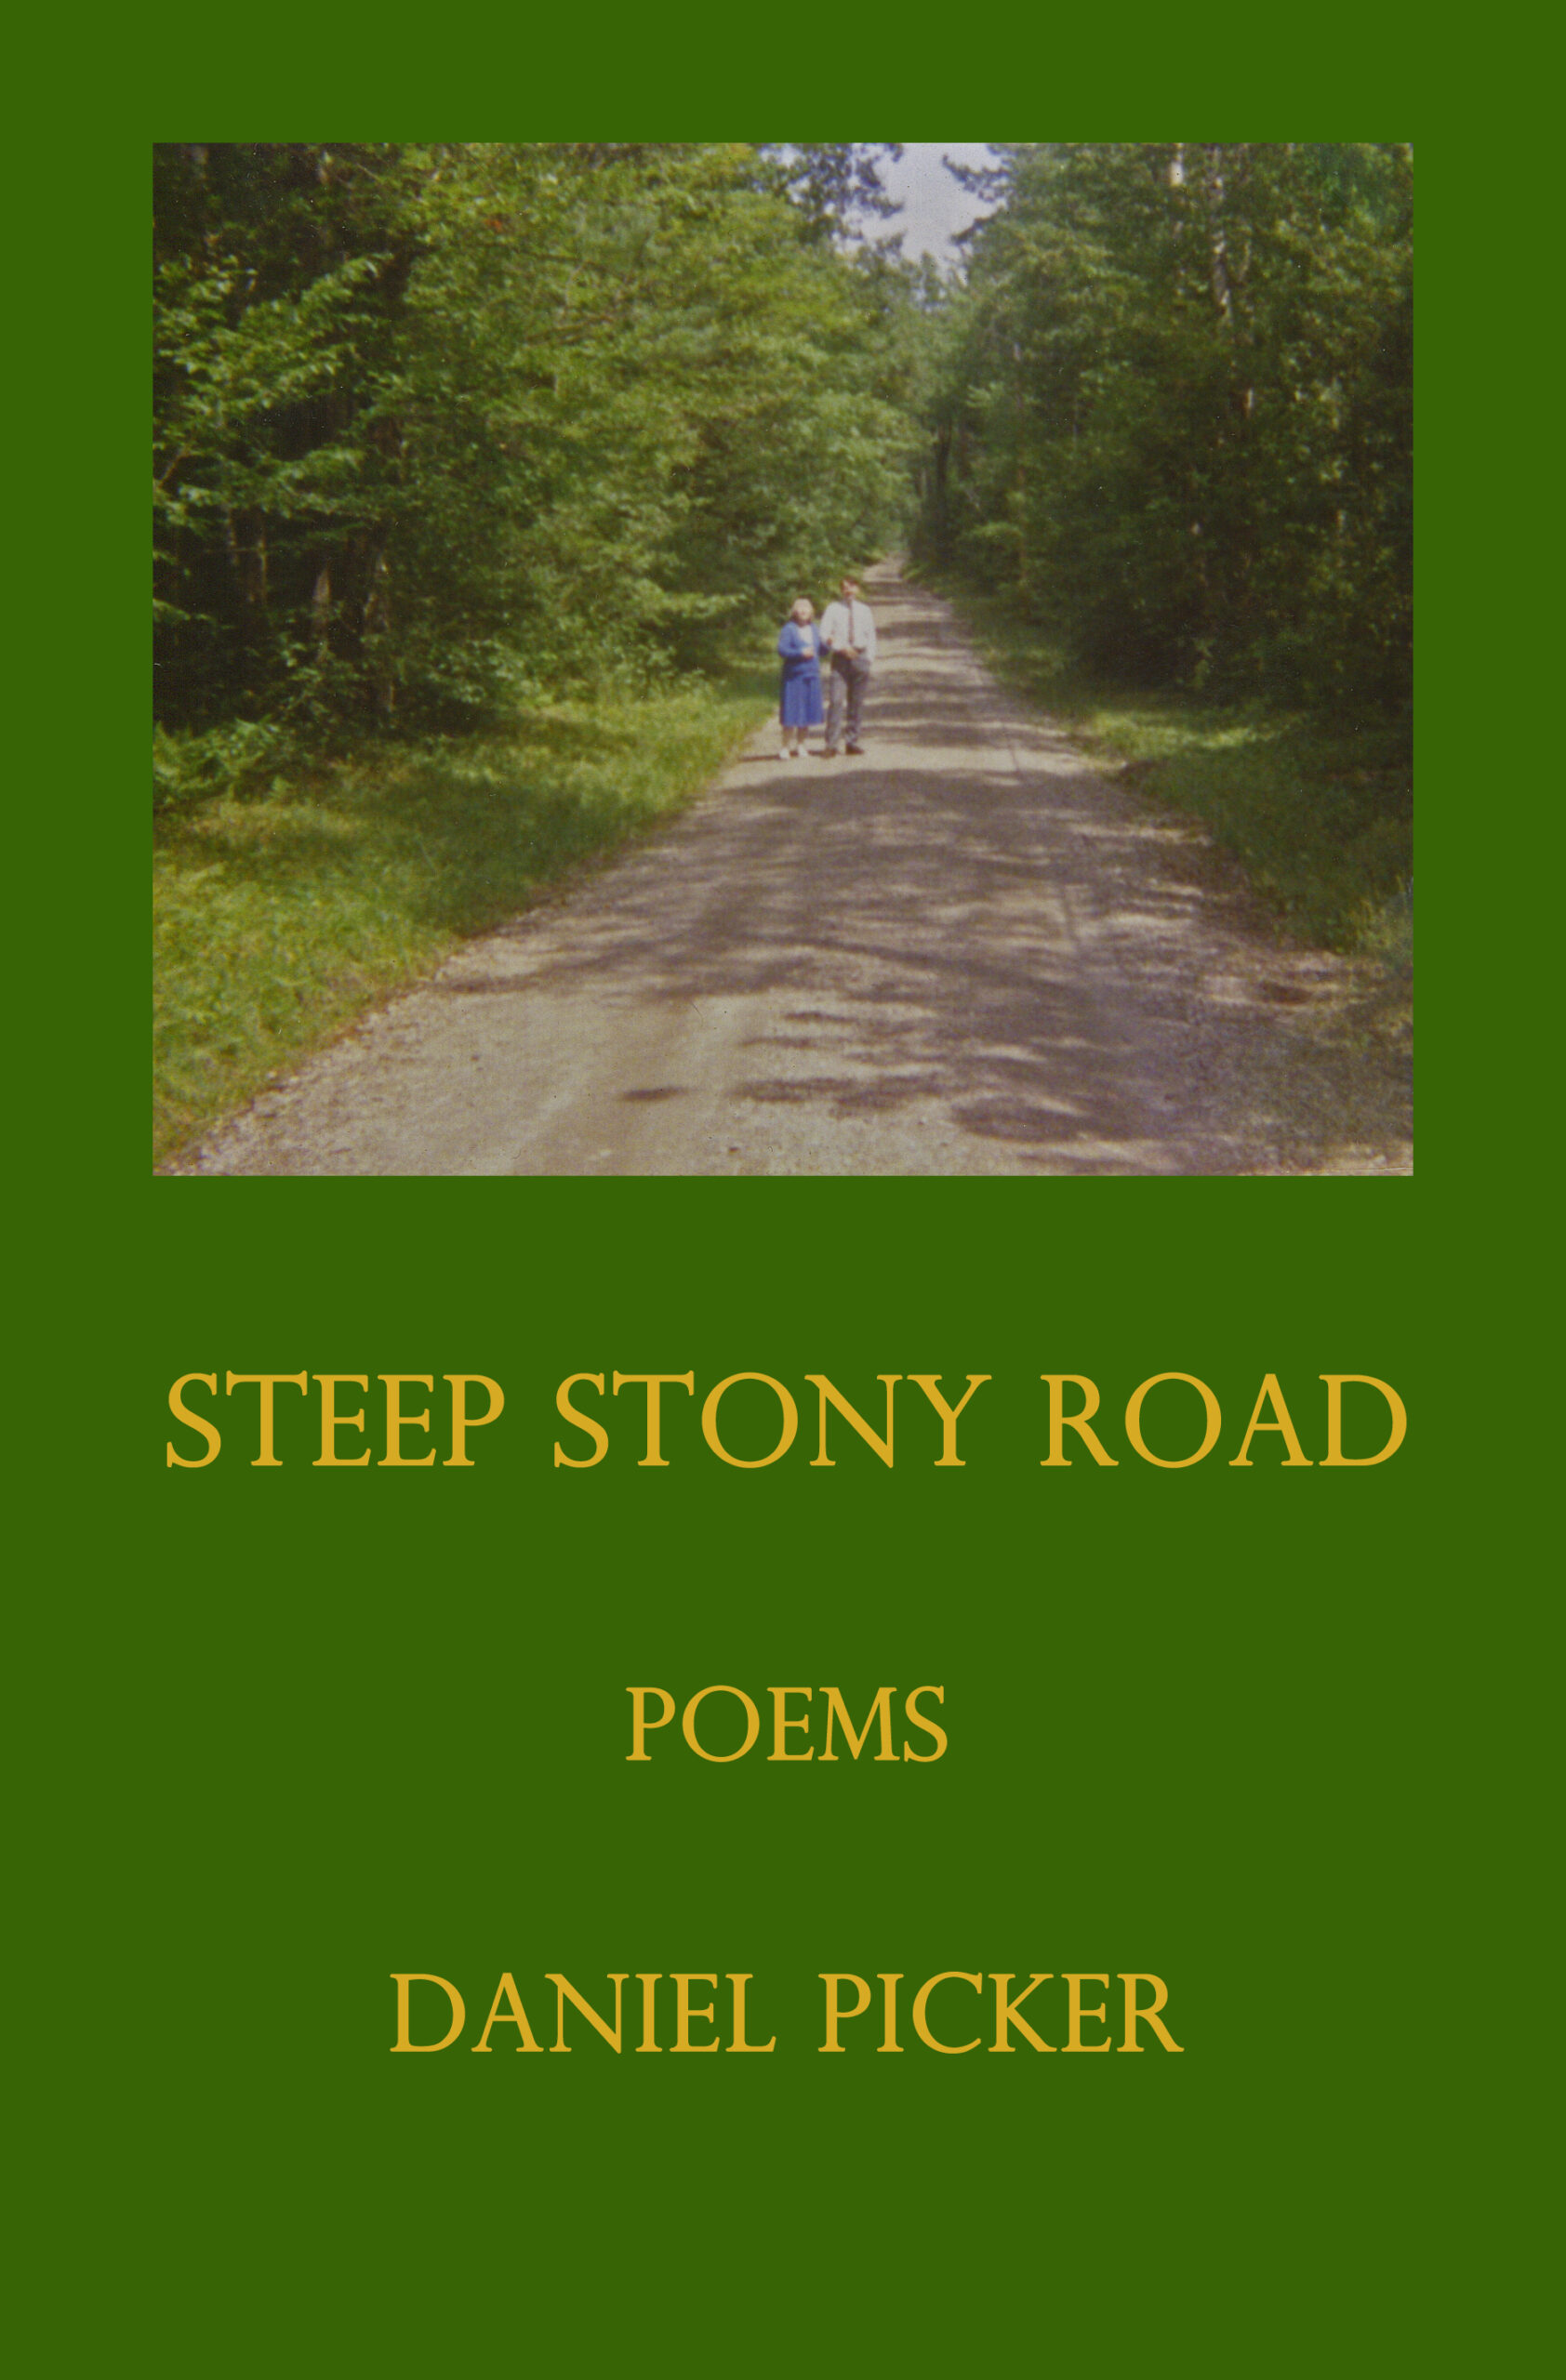 Steep Stony Road by Daniel Picker